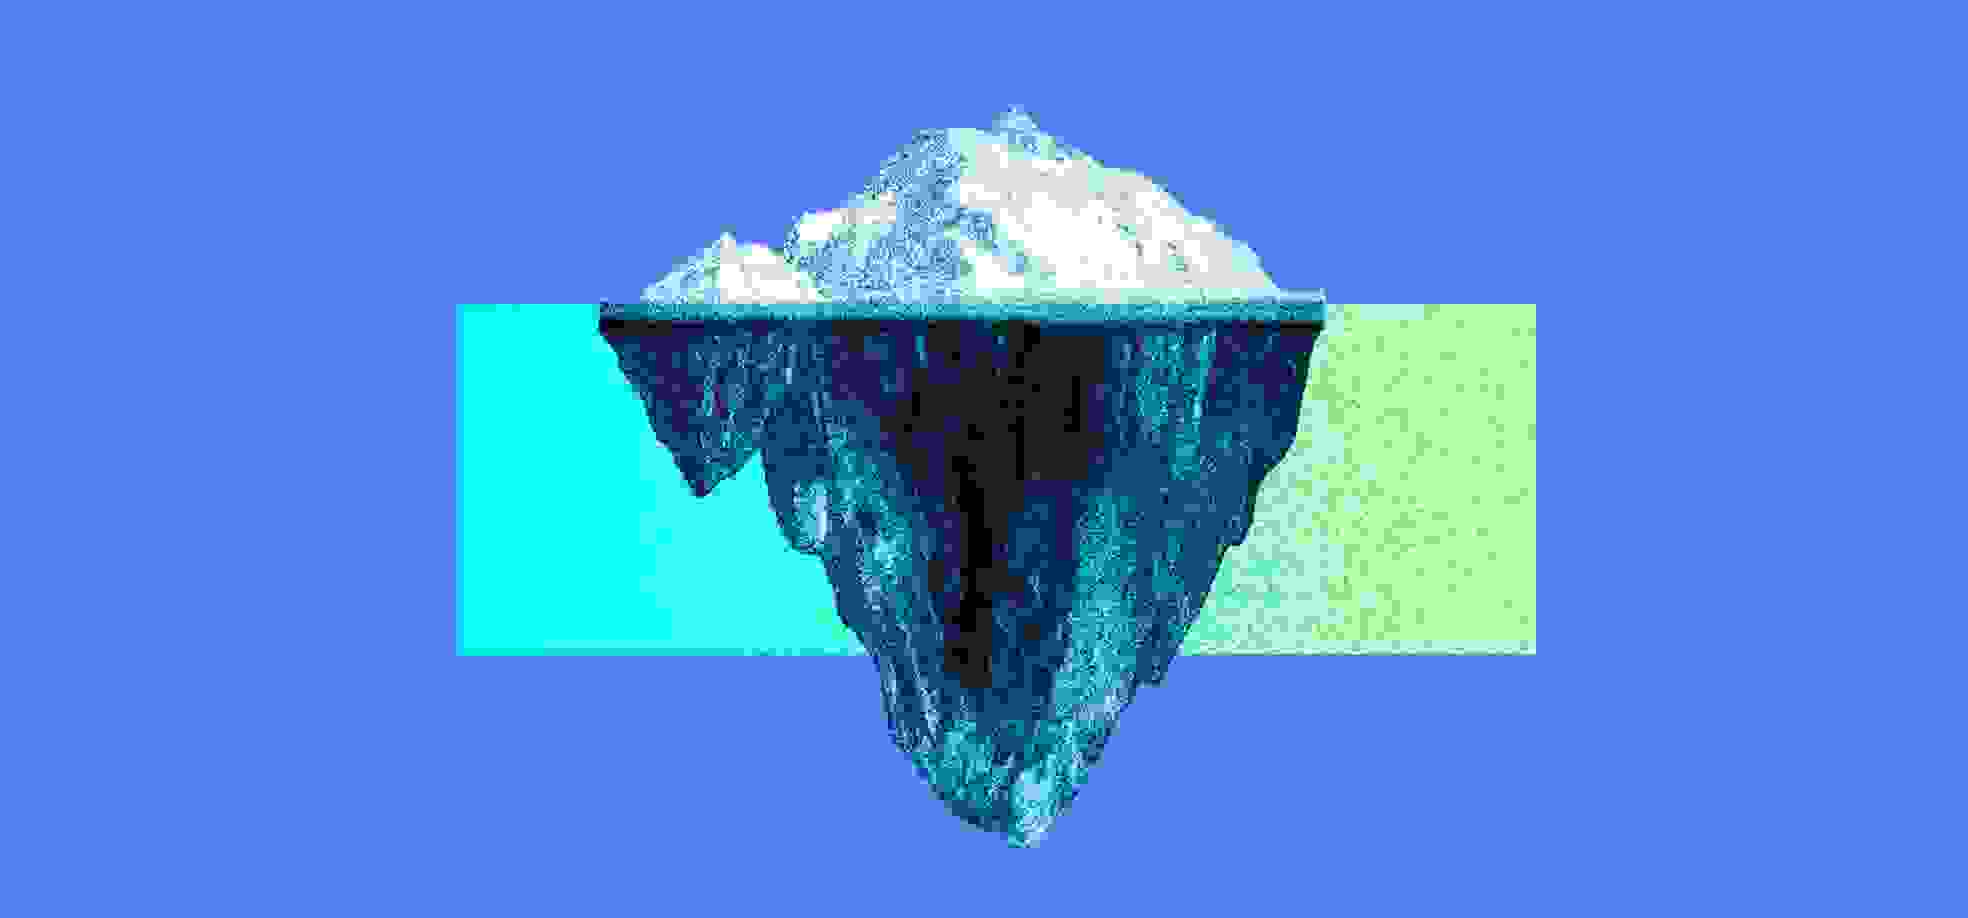 Iceberg on the blue background